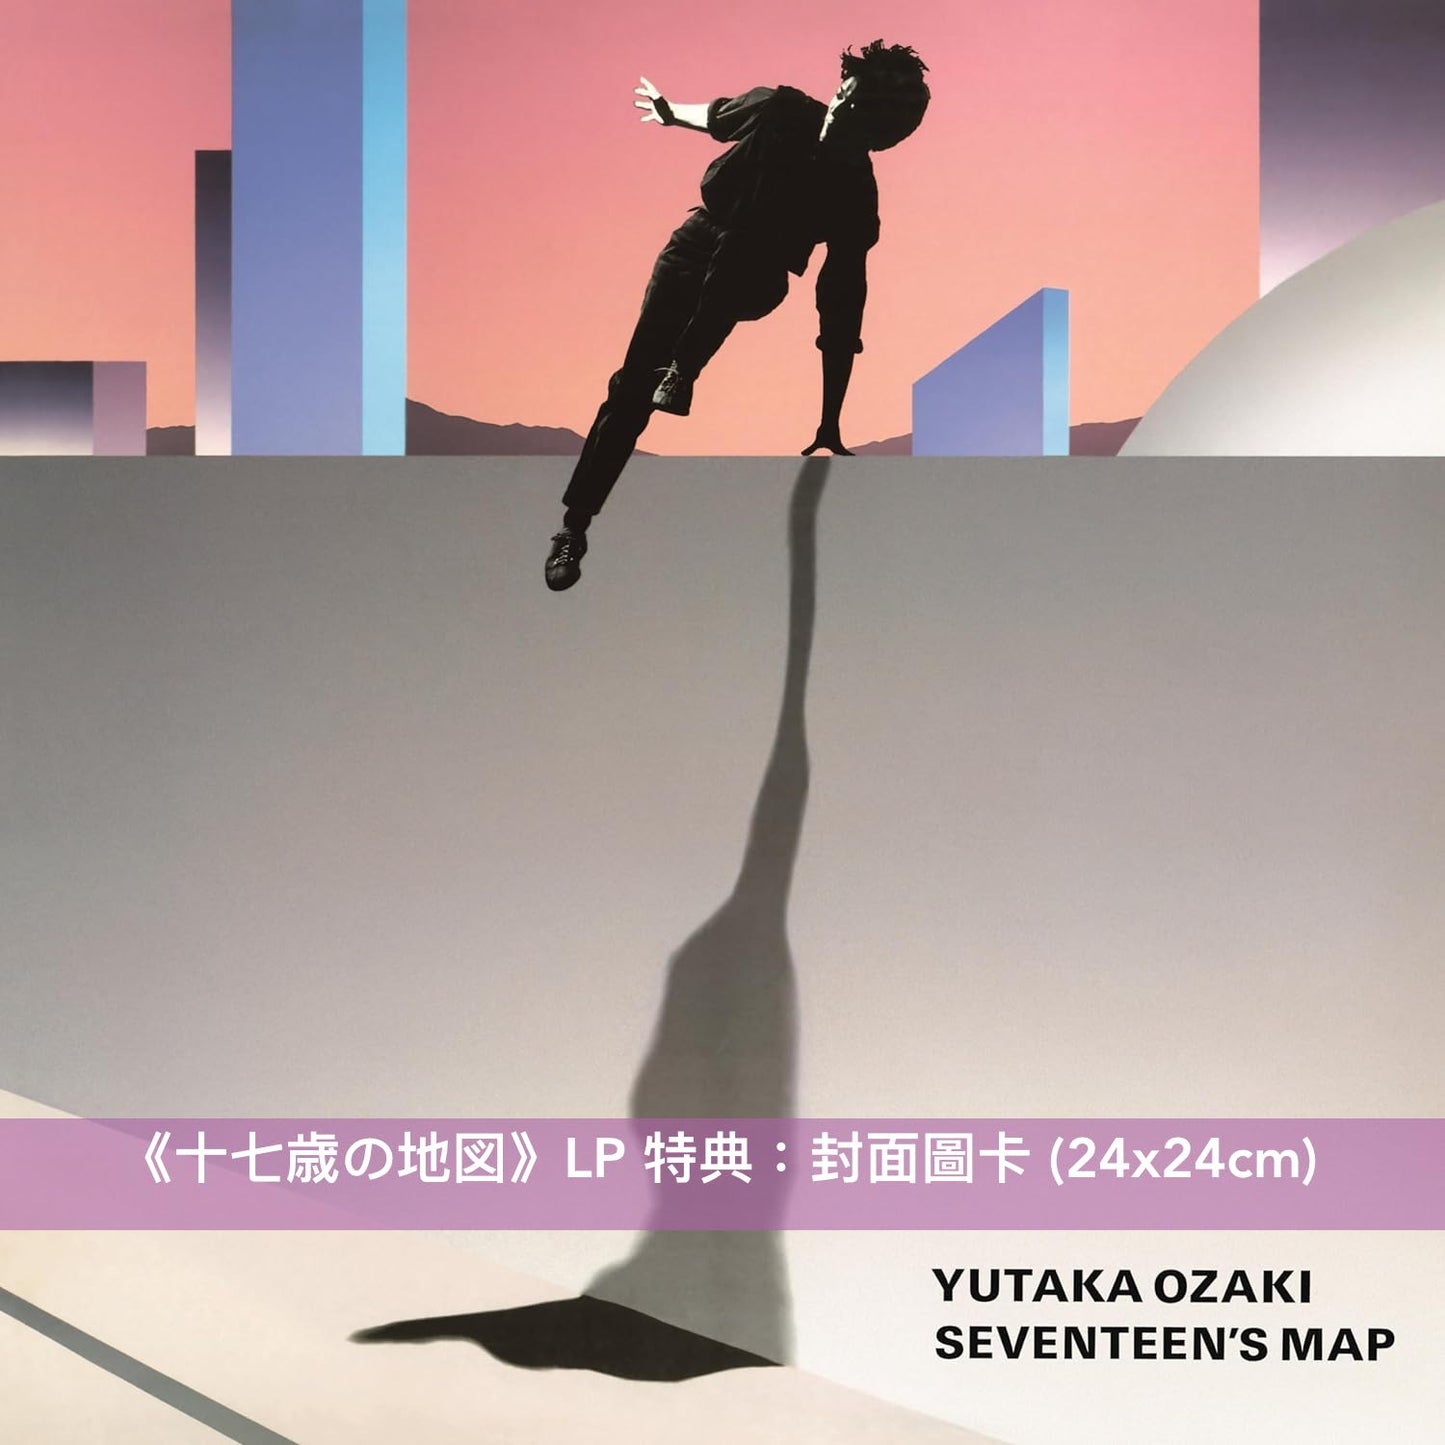 紀念尾崎豐出道40週年 首張原創專輯《十七歳の地図》復刻黑膠 ＜完全生産限定盤(LP)＞、初次以Blu-ray發行《ANOTHER REALITY OF YUTAKA OZAKI LIVE+DOCUMENTATION》＜Blu-ray＞